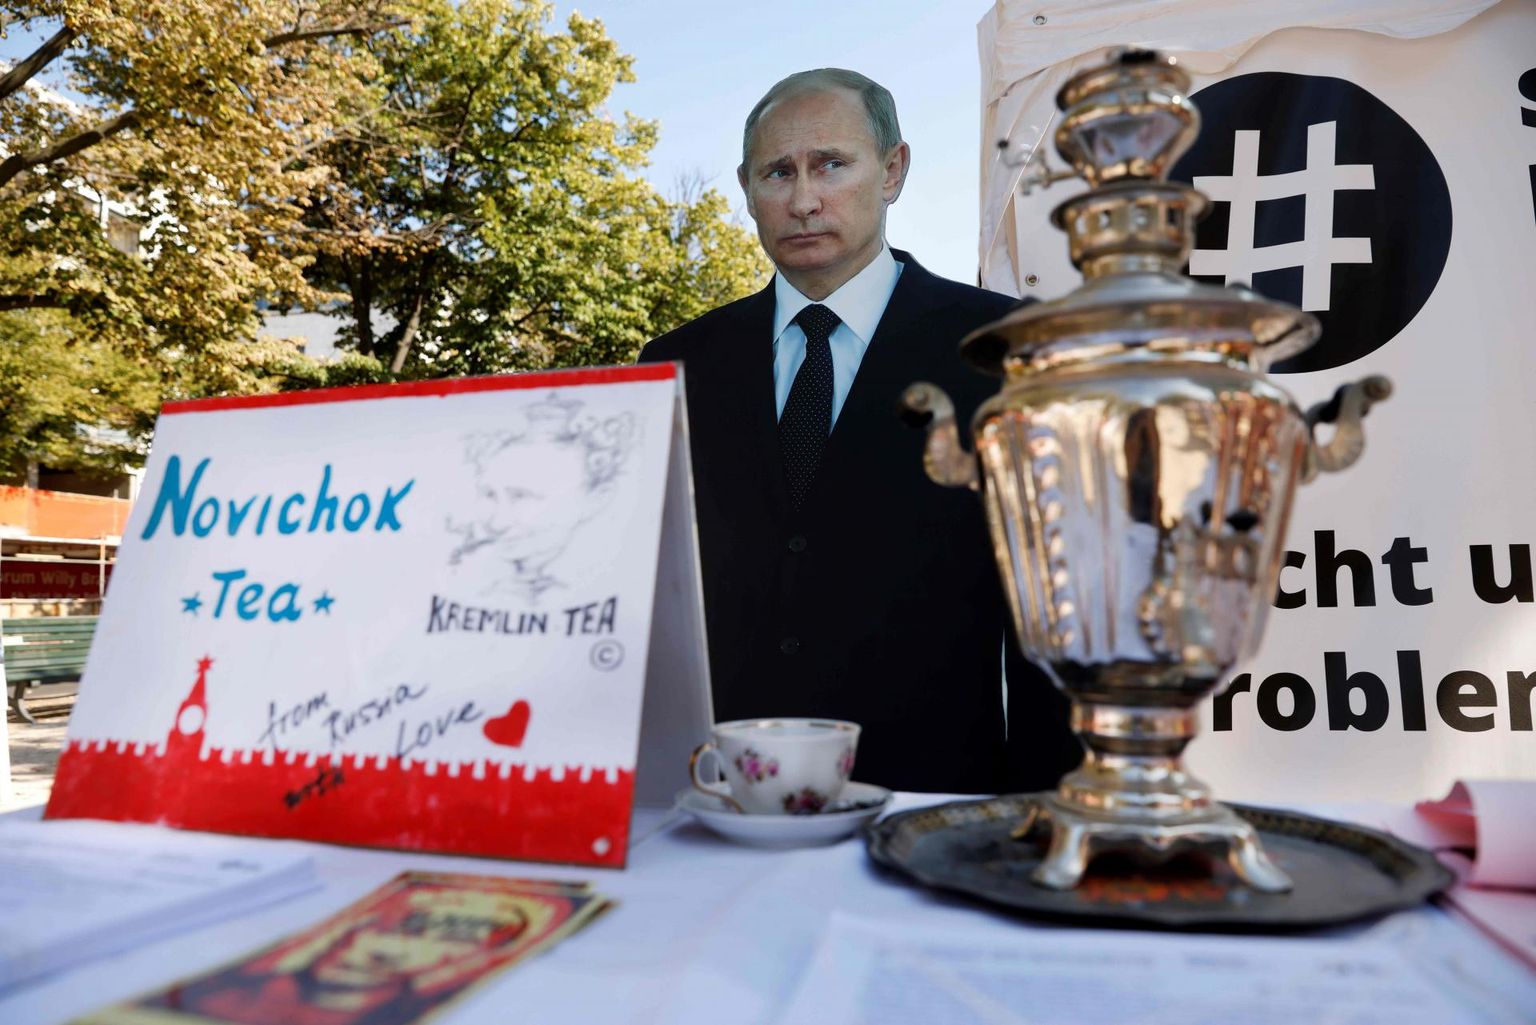 Vene saatkonna ette Berliinis püstitati sügisel pilt Vene presidendist Vladimir Putinist, kes pakub möödujatele Novitšoki närvimürgiga teed. 